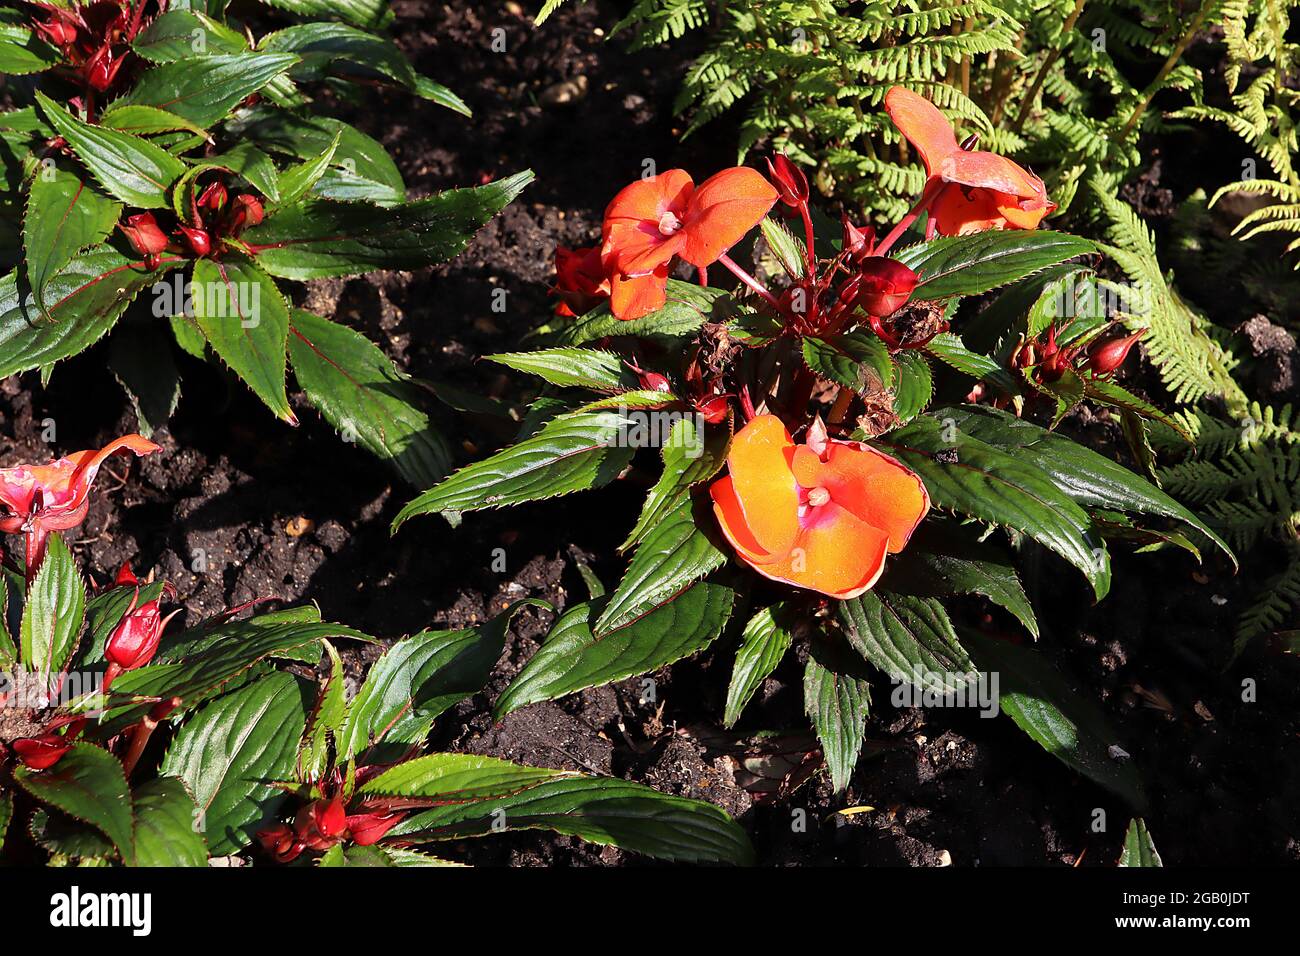 Impatiens hawkerii ‘Super Sonic Flame’ New Guinea Impatiens Flame – flame piatto di fiori arancioni profondi e foglie dentellate di colore verde scuro, giugno, Inghilterra, Regno Unito Foto Stock